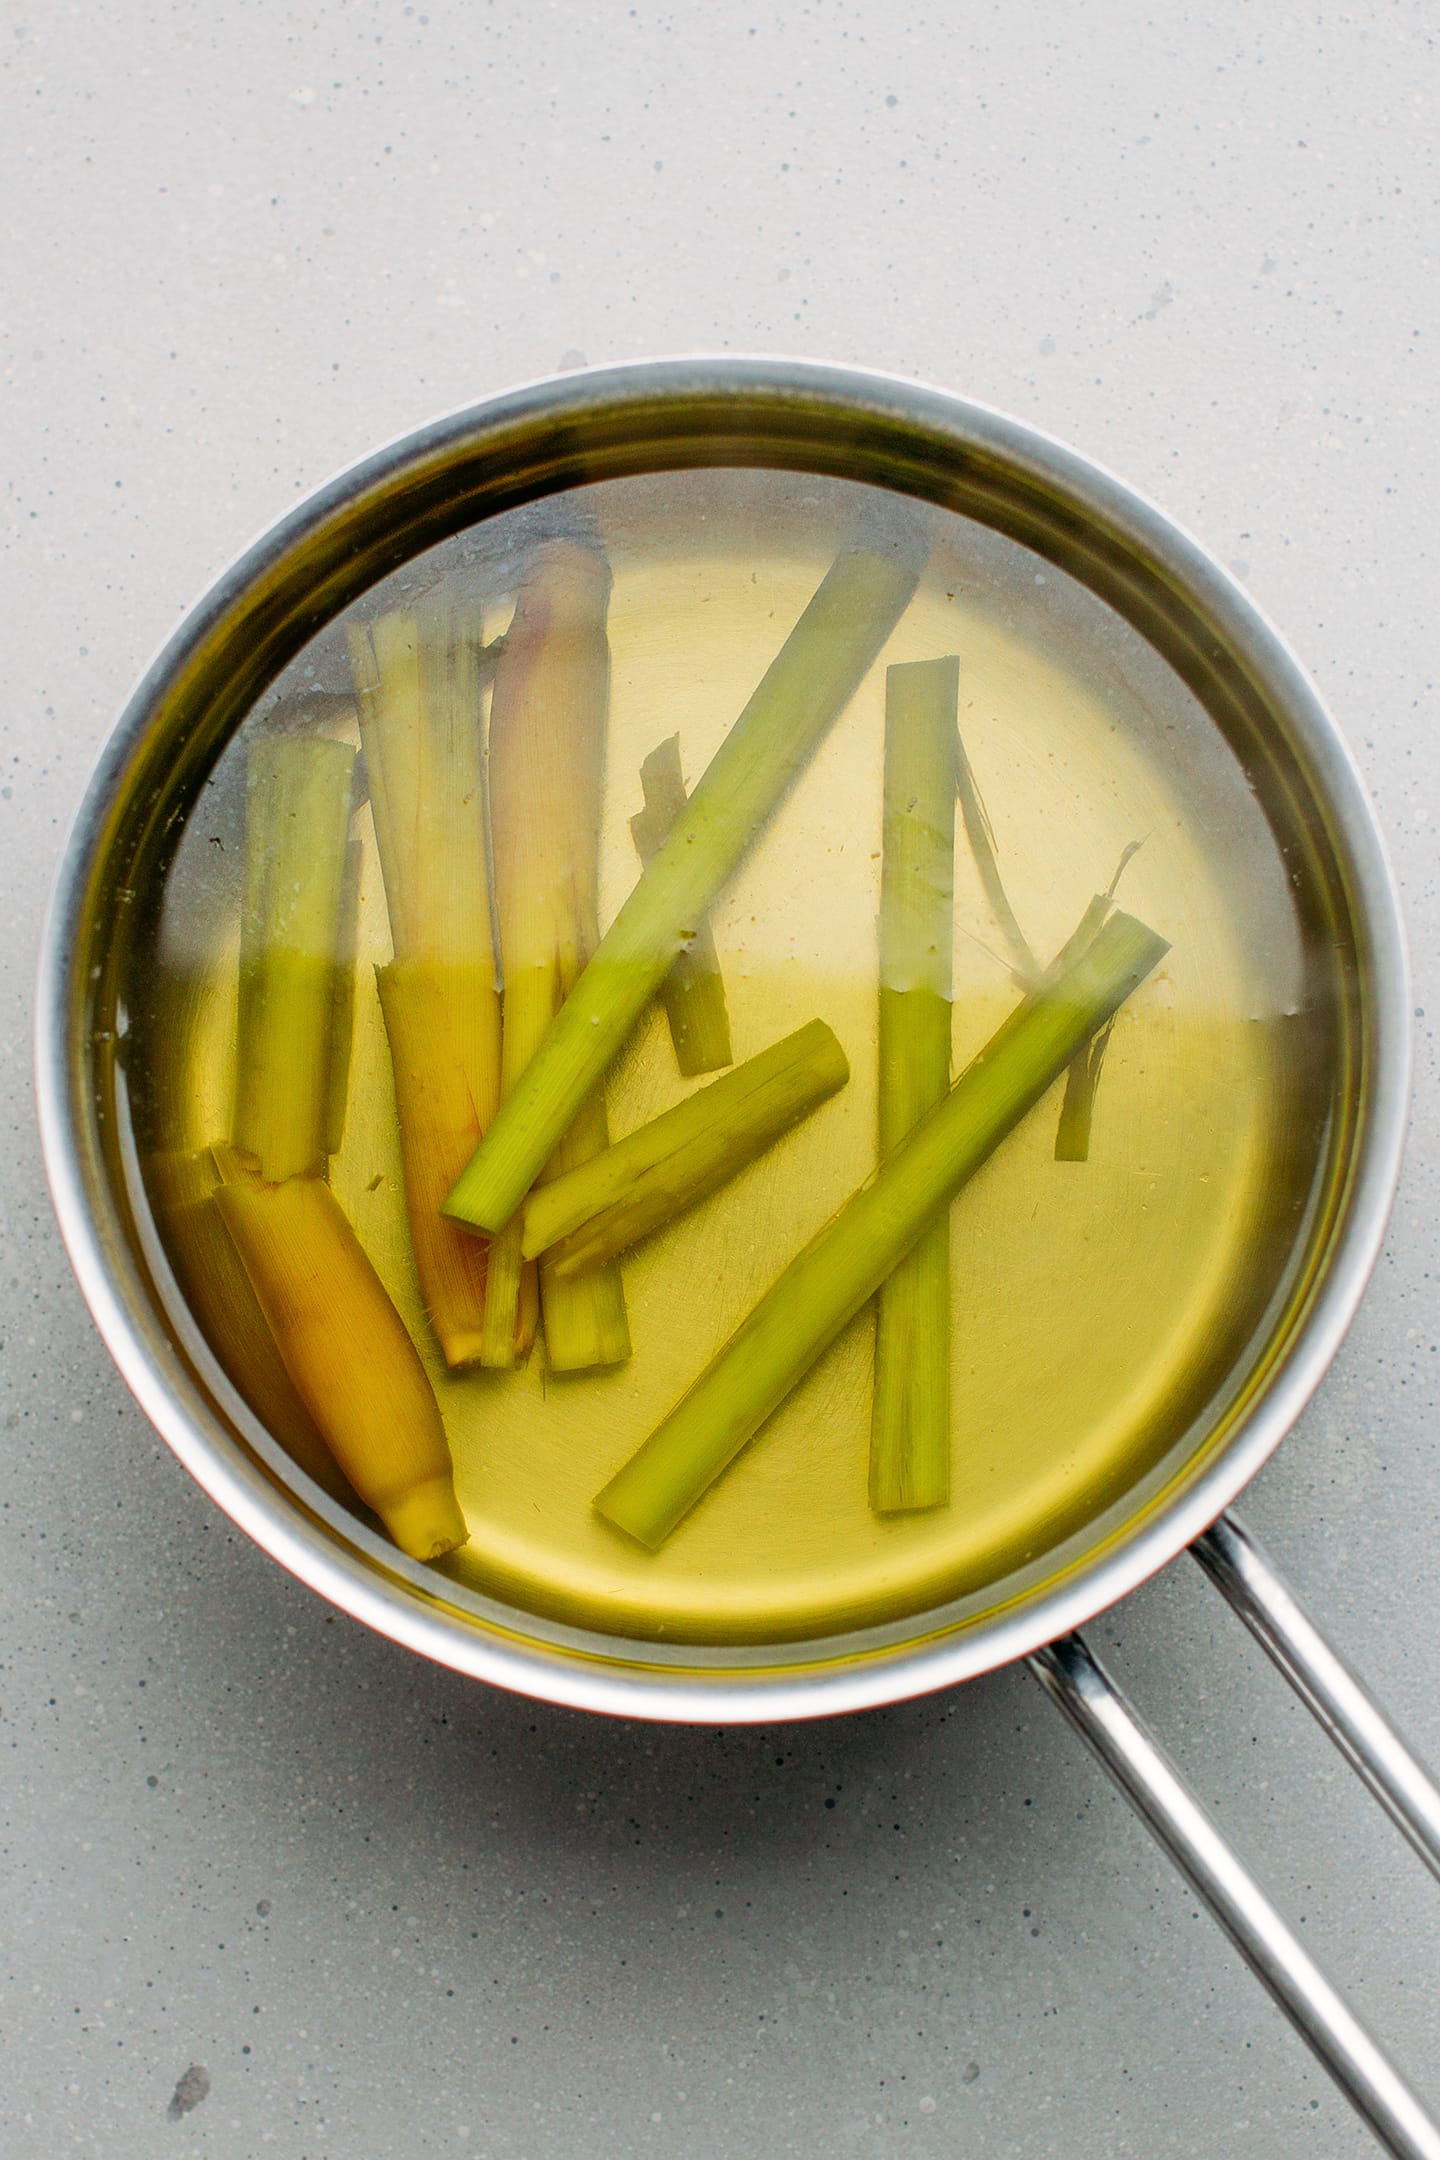 Lemongrass stalks in a saucepan.